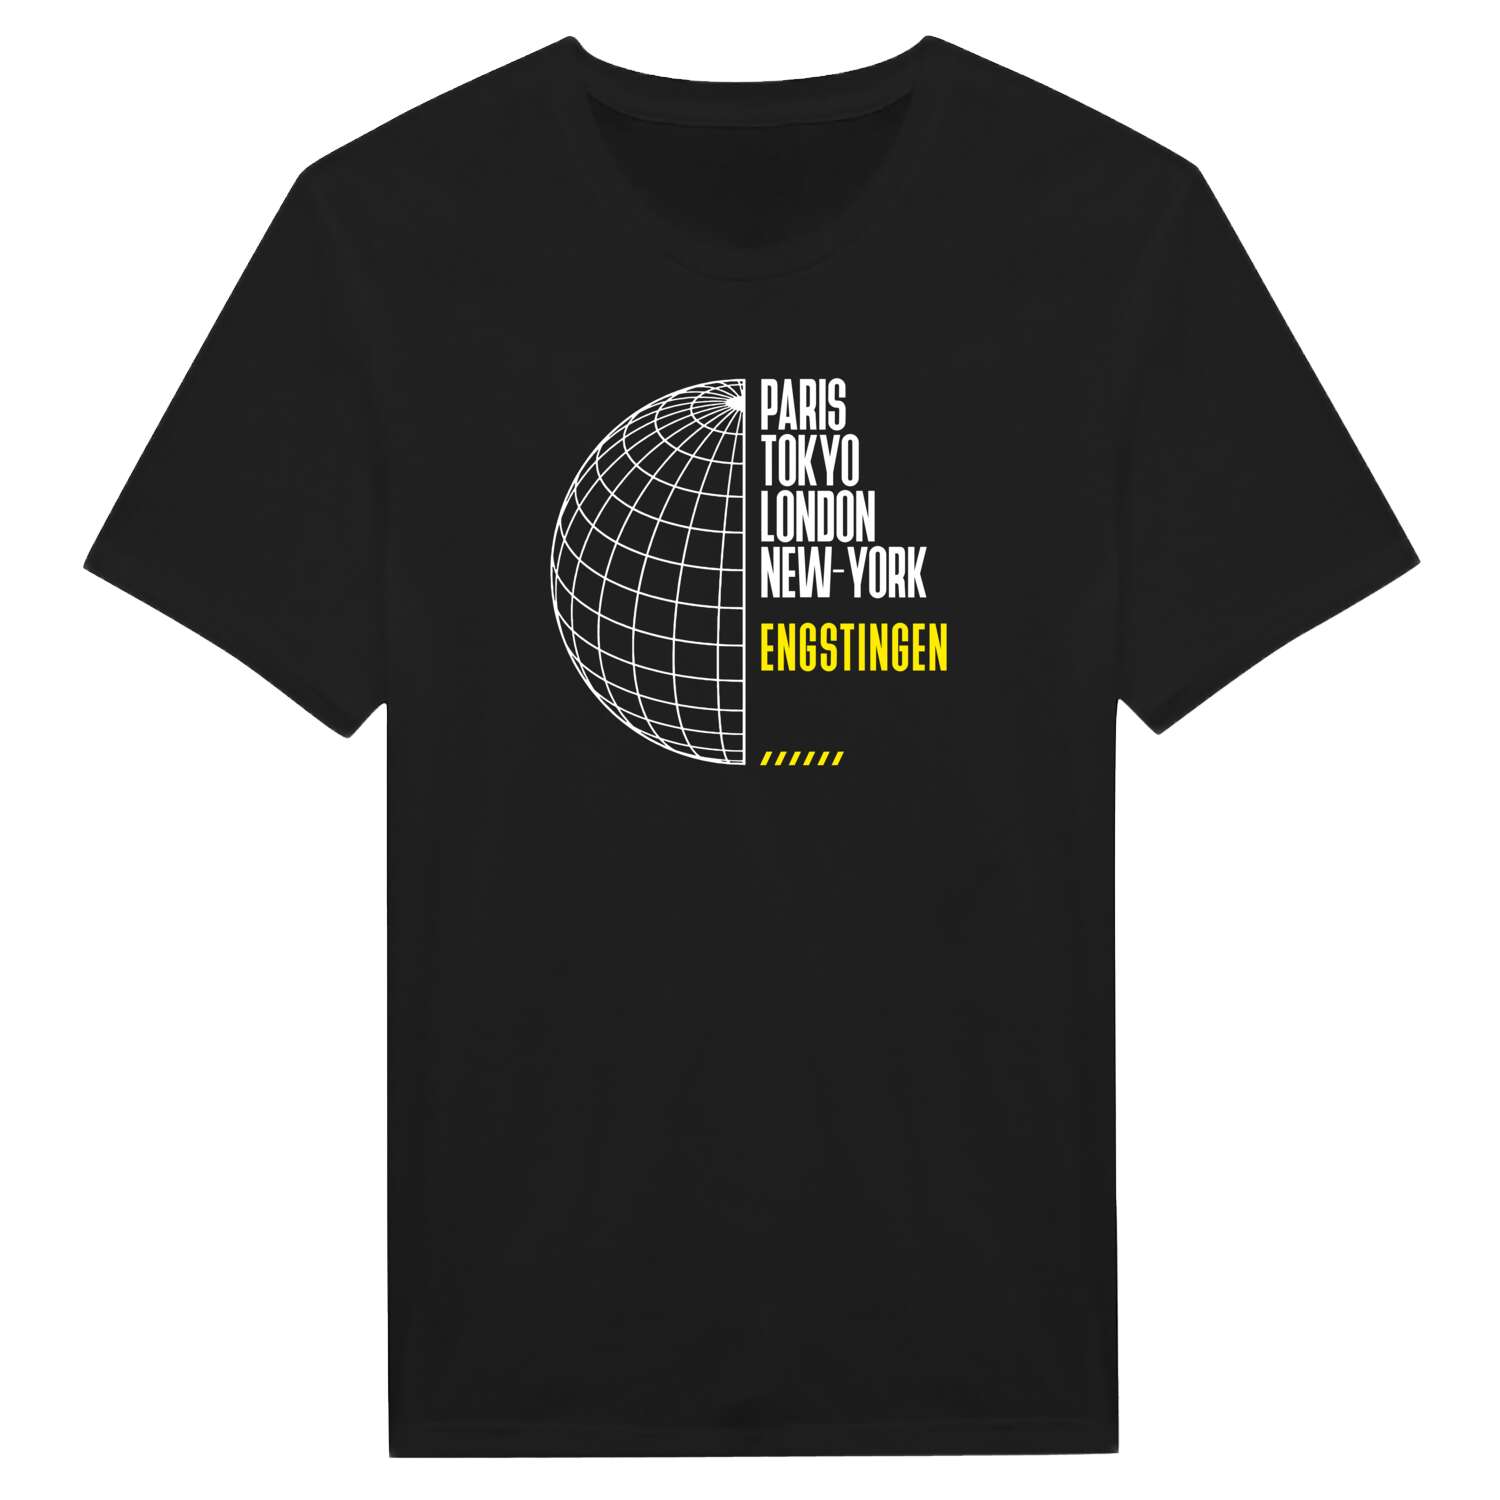 Engstingen T-Shirt »Paris Tokyo London«